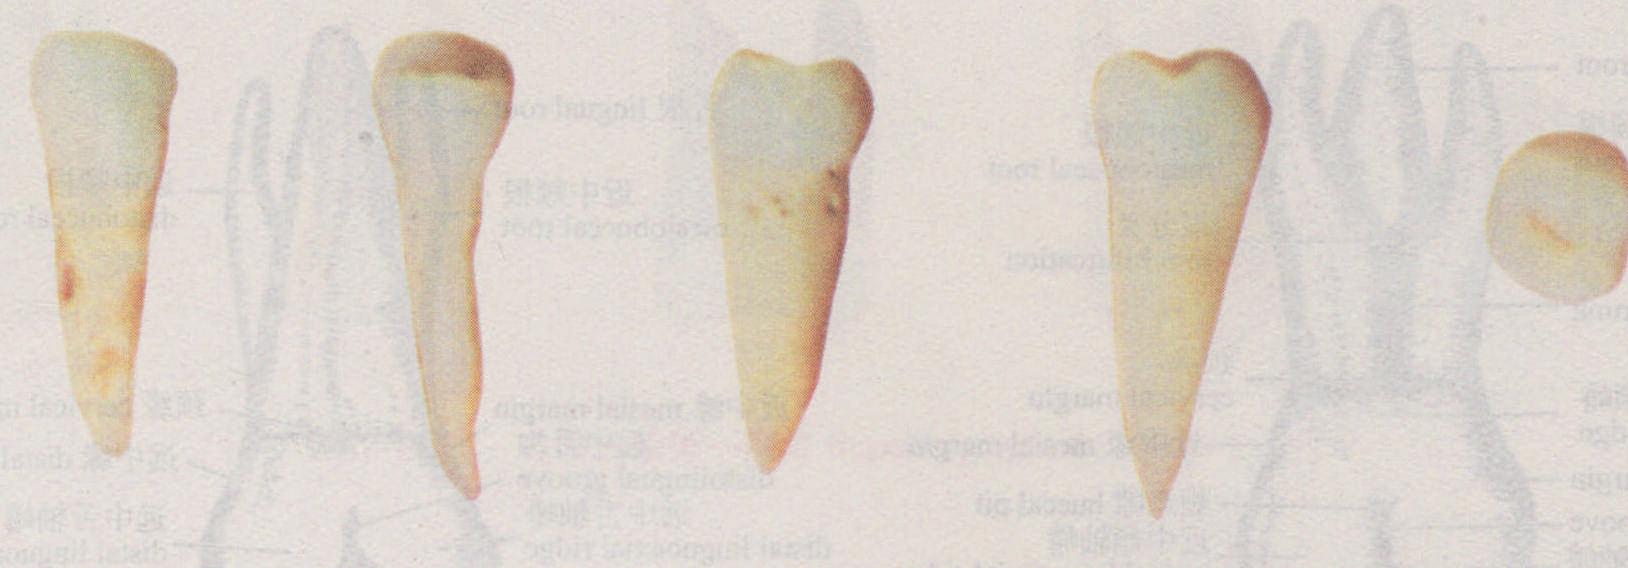 图1-2-22 右侧下颌第二前磨牙